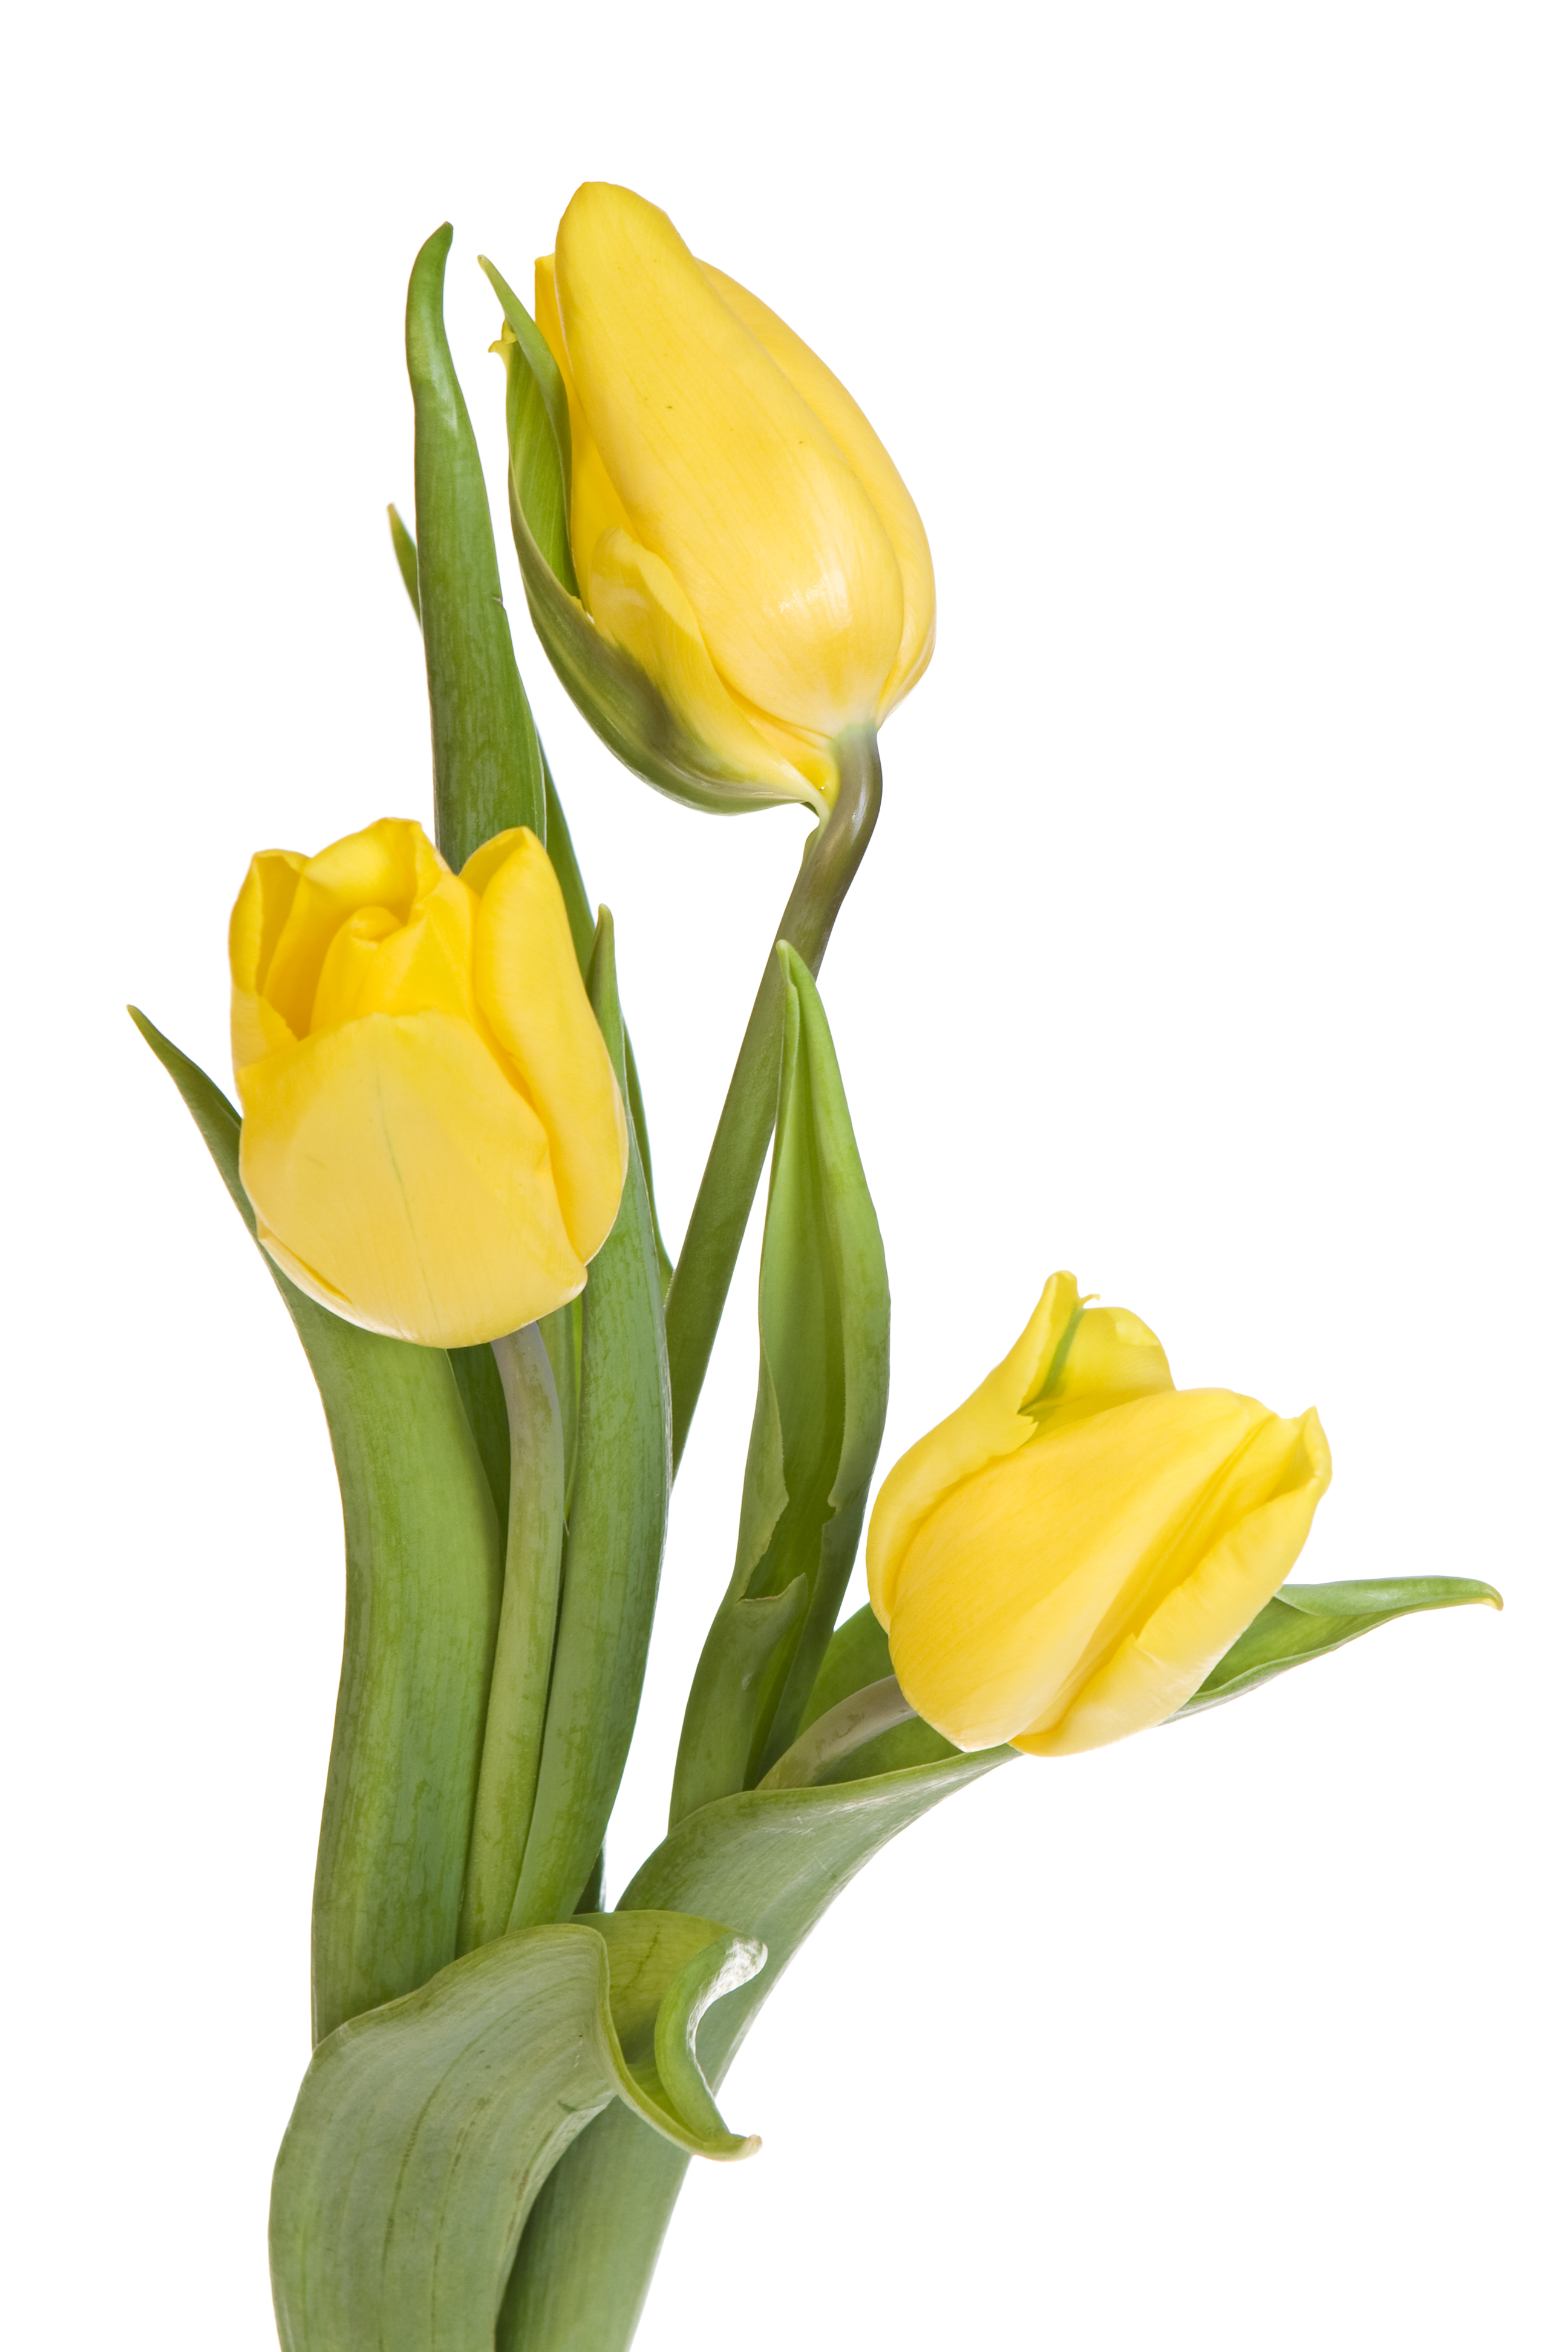 Yellow tulips photo